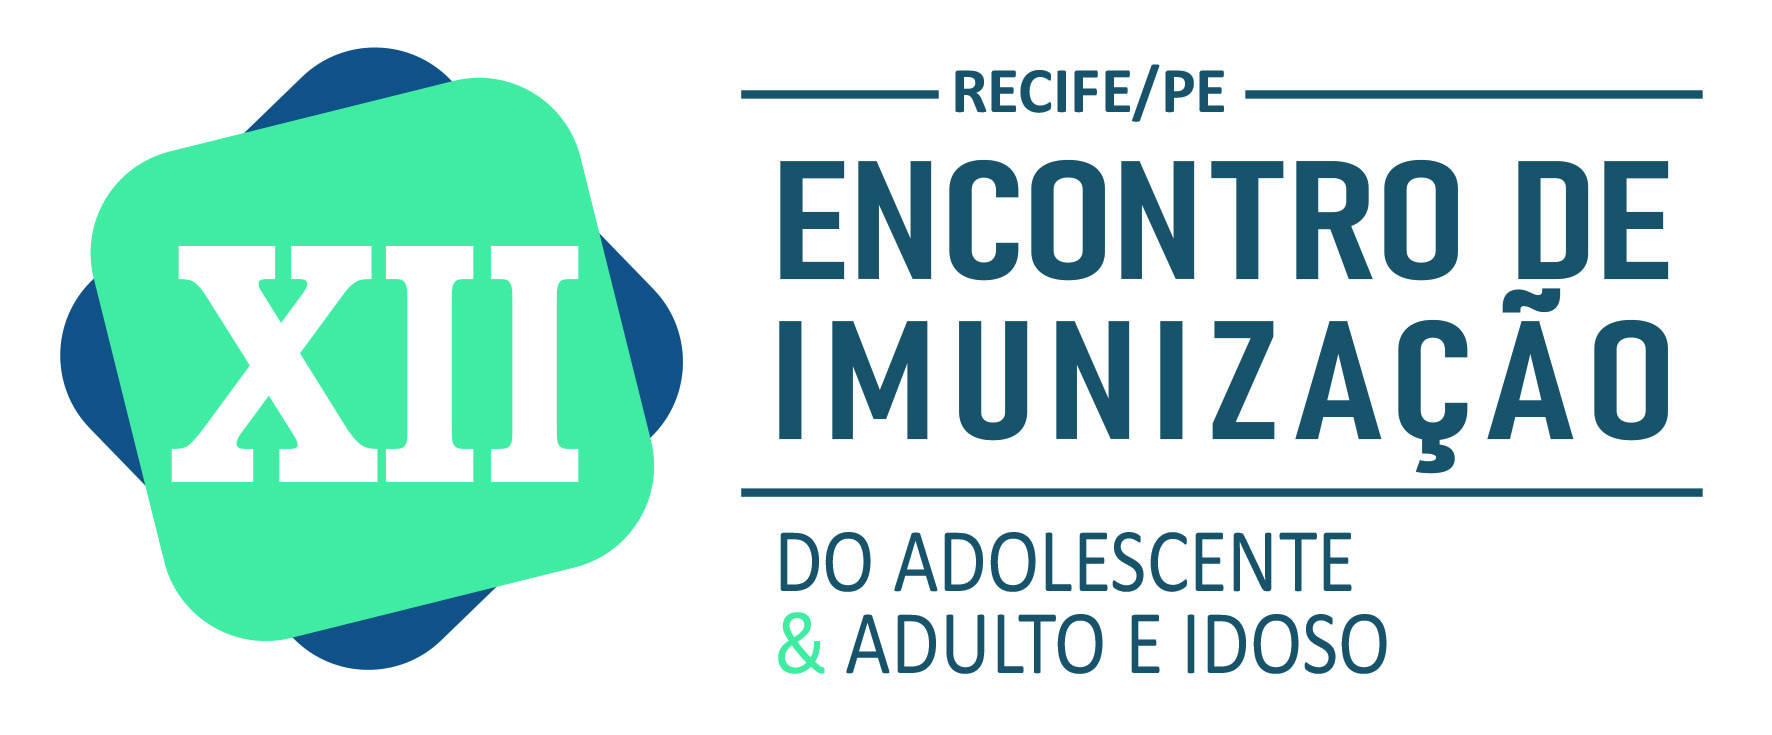 XII Encontro de Imunização de Adolescentes e Adulto Idoso